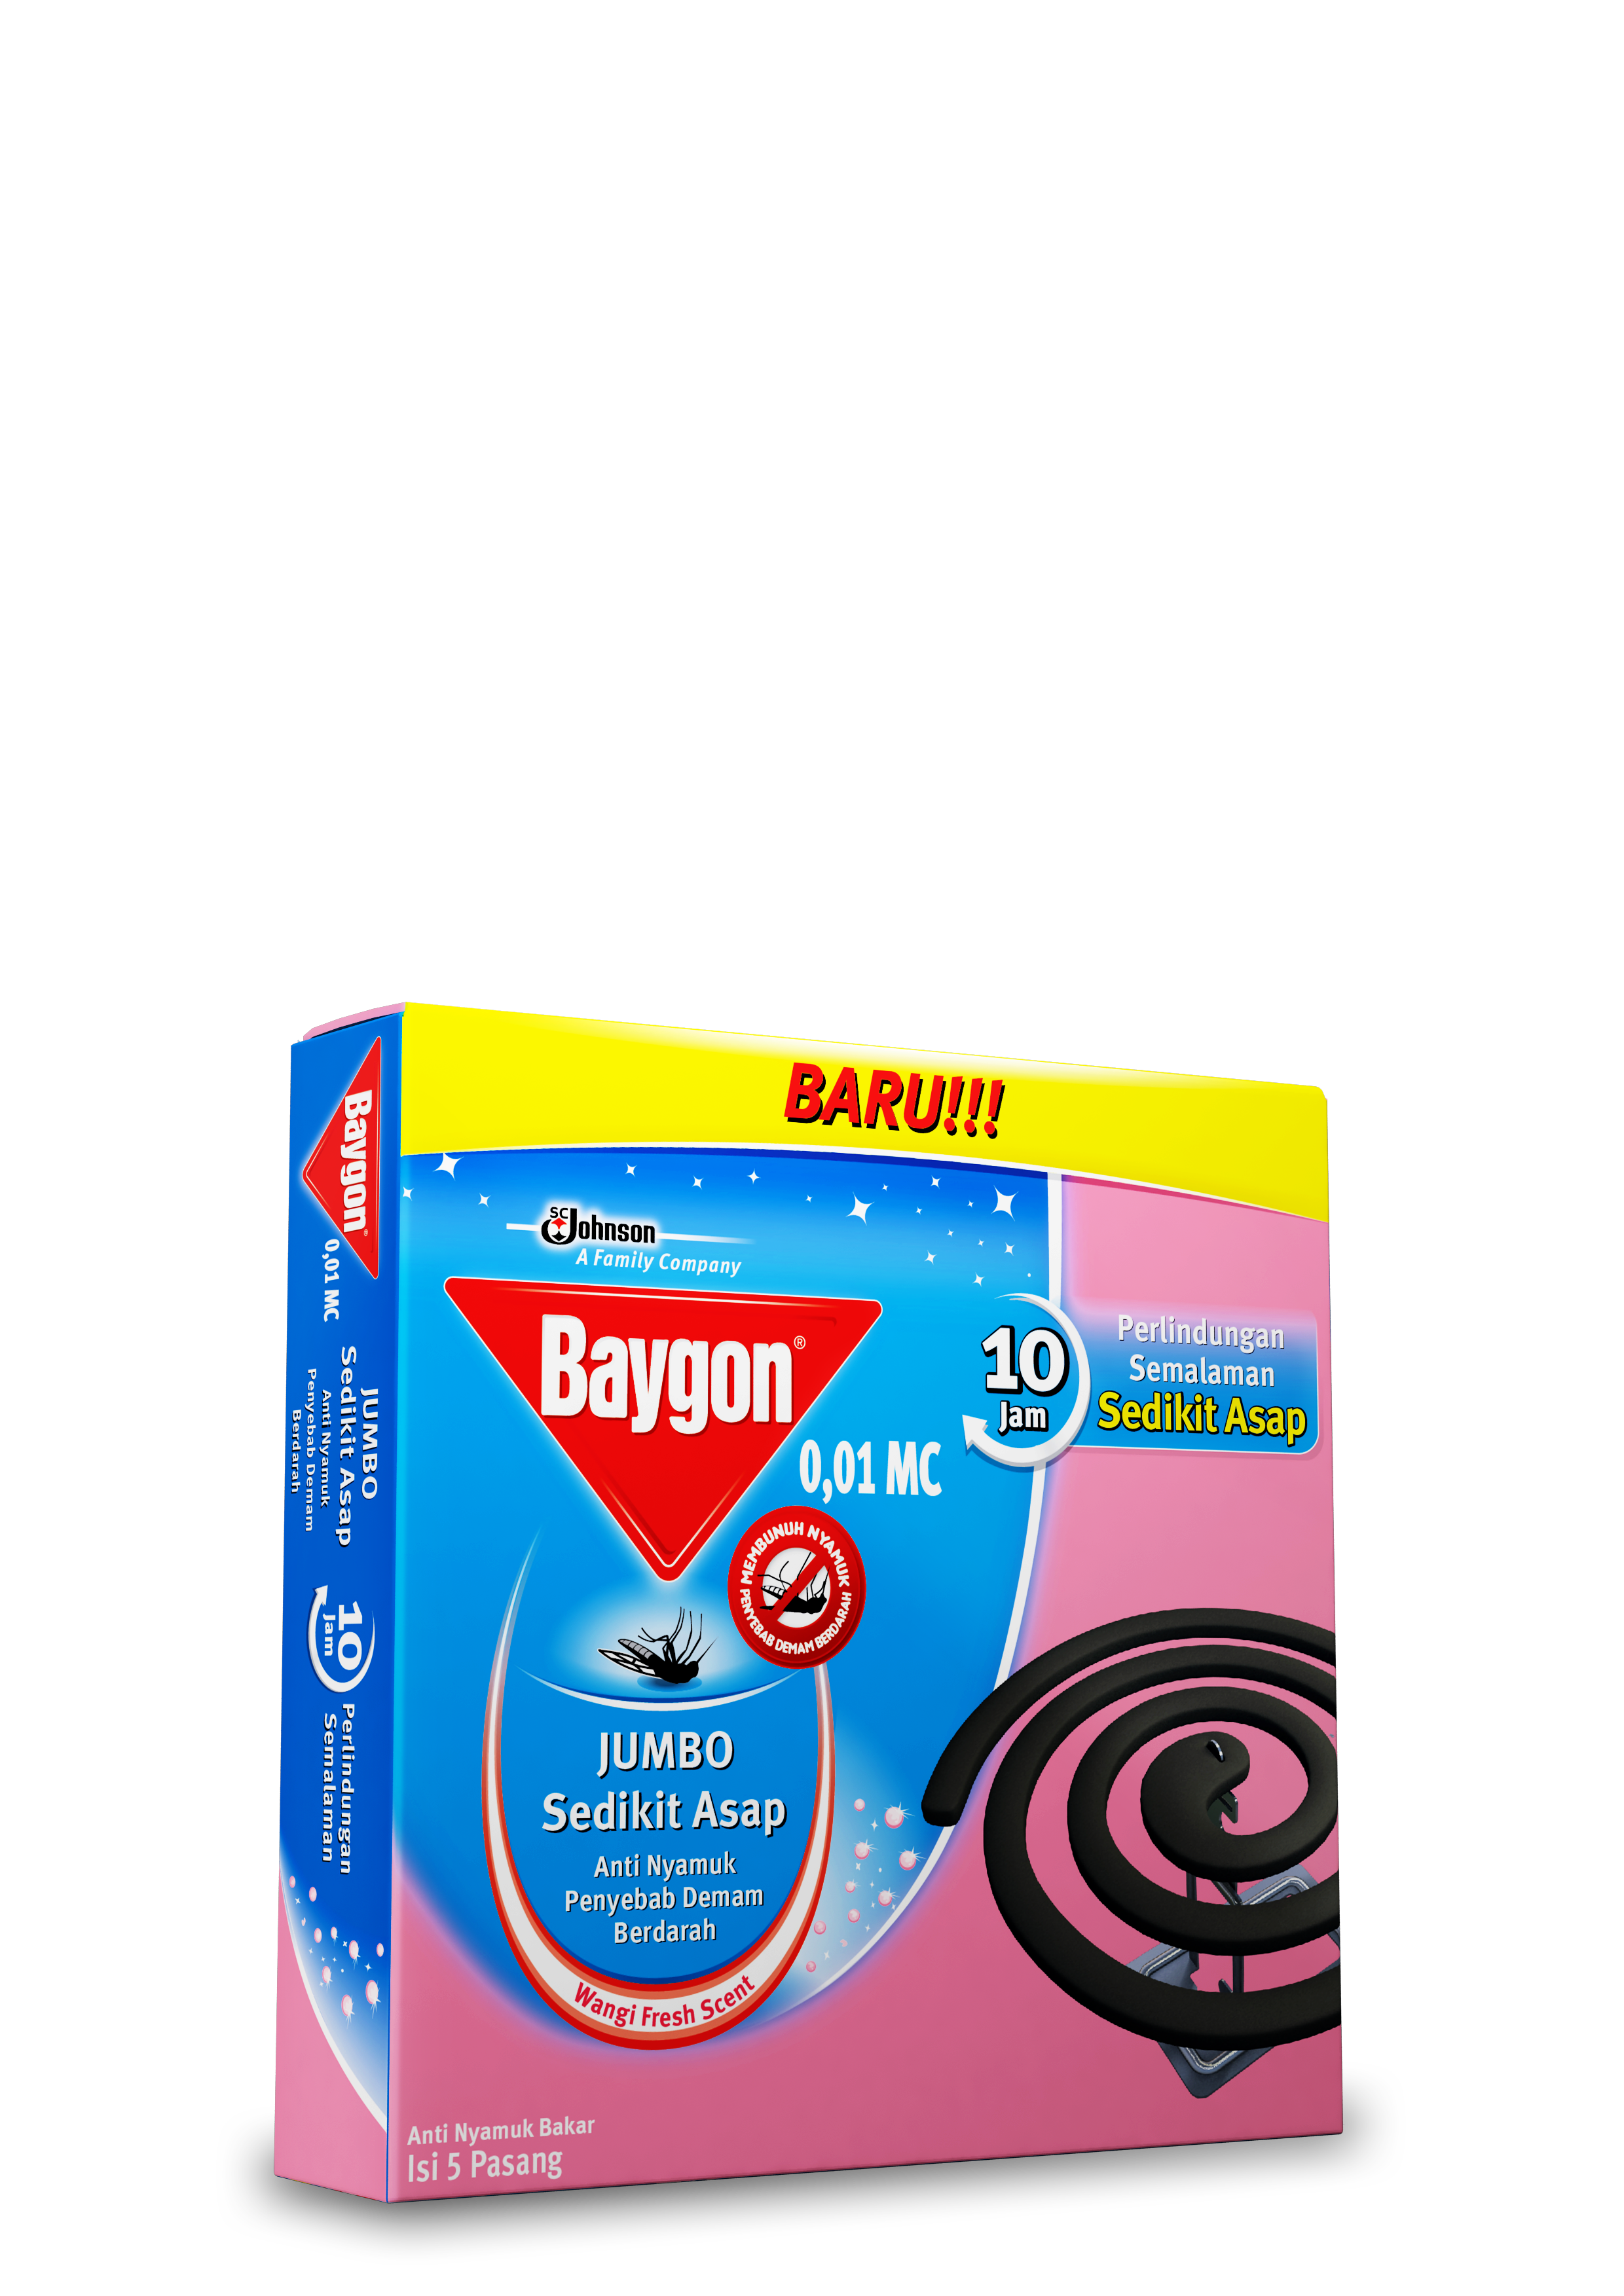 Baygon® Anti Nyamuk Bakar Low Smoke Coil